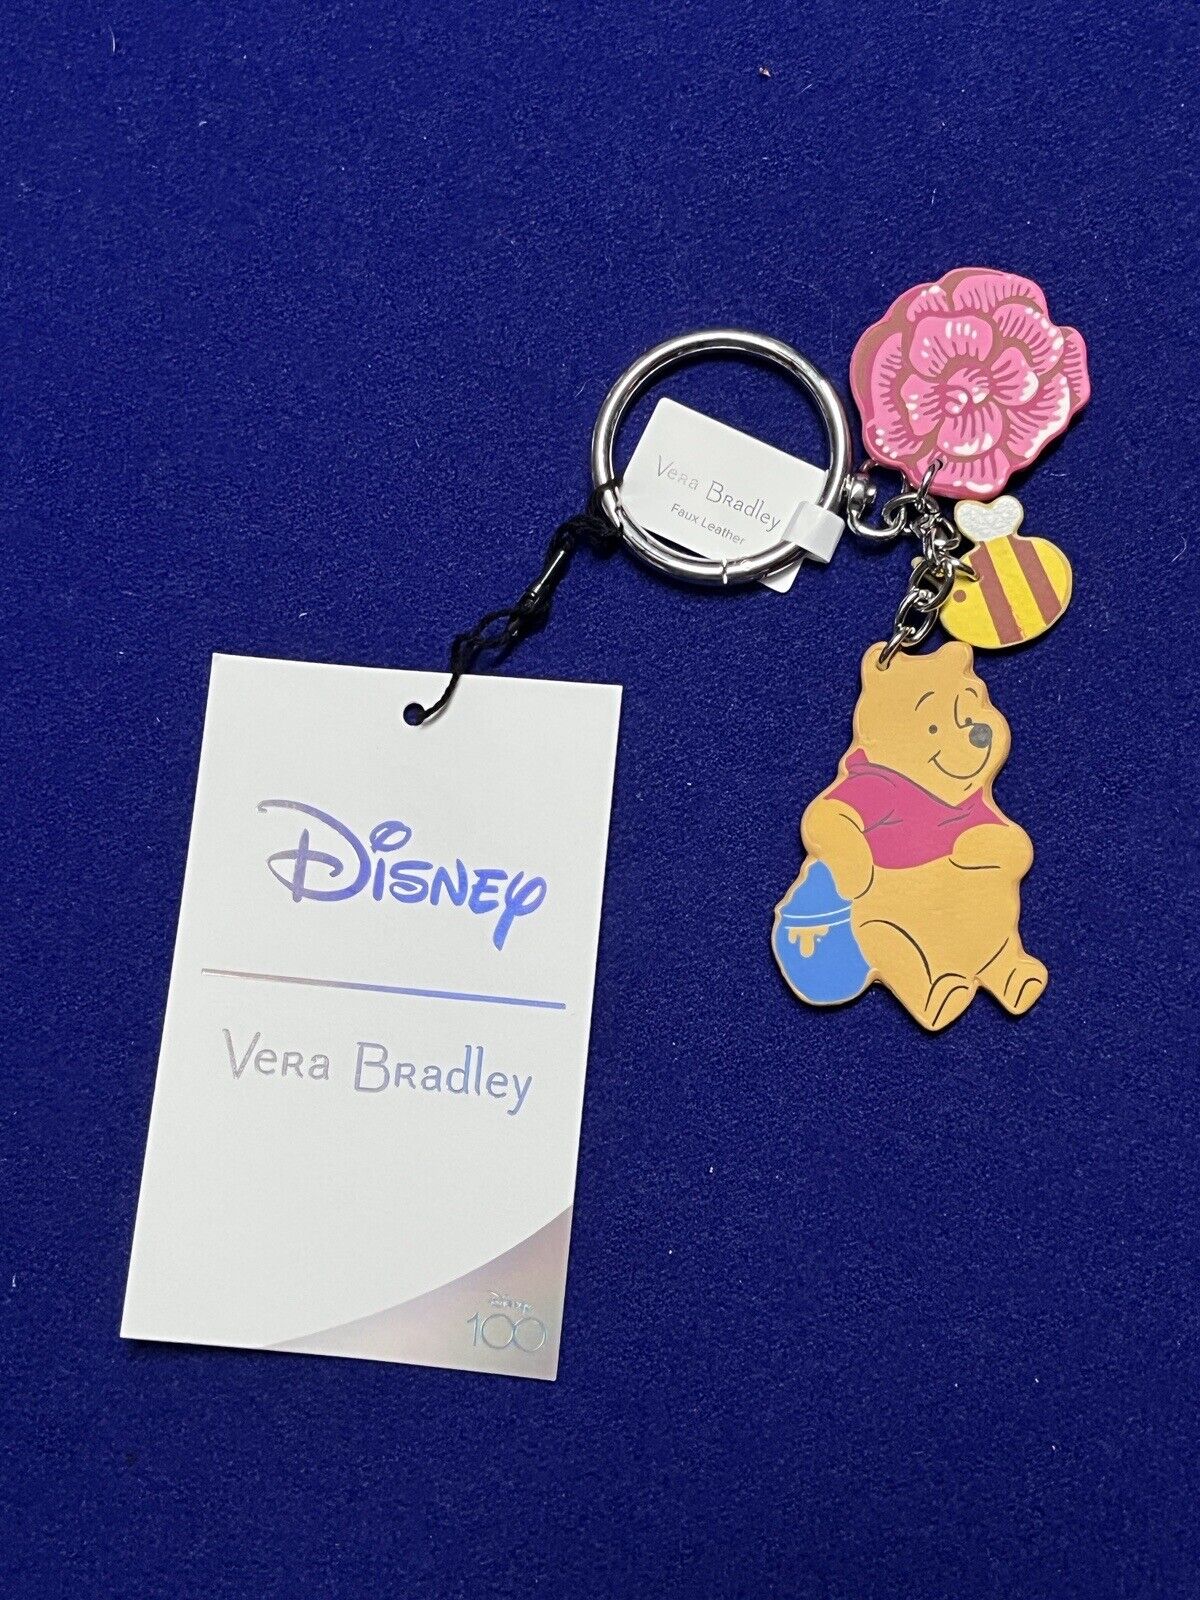 Vera Bradley Disney 100 Winnie the Pooh Bag Charm Keychain NEW